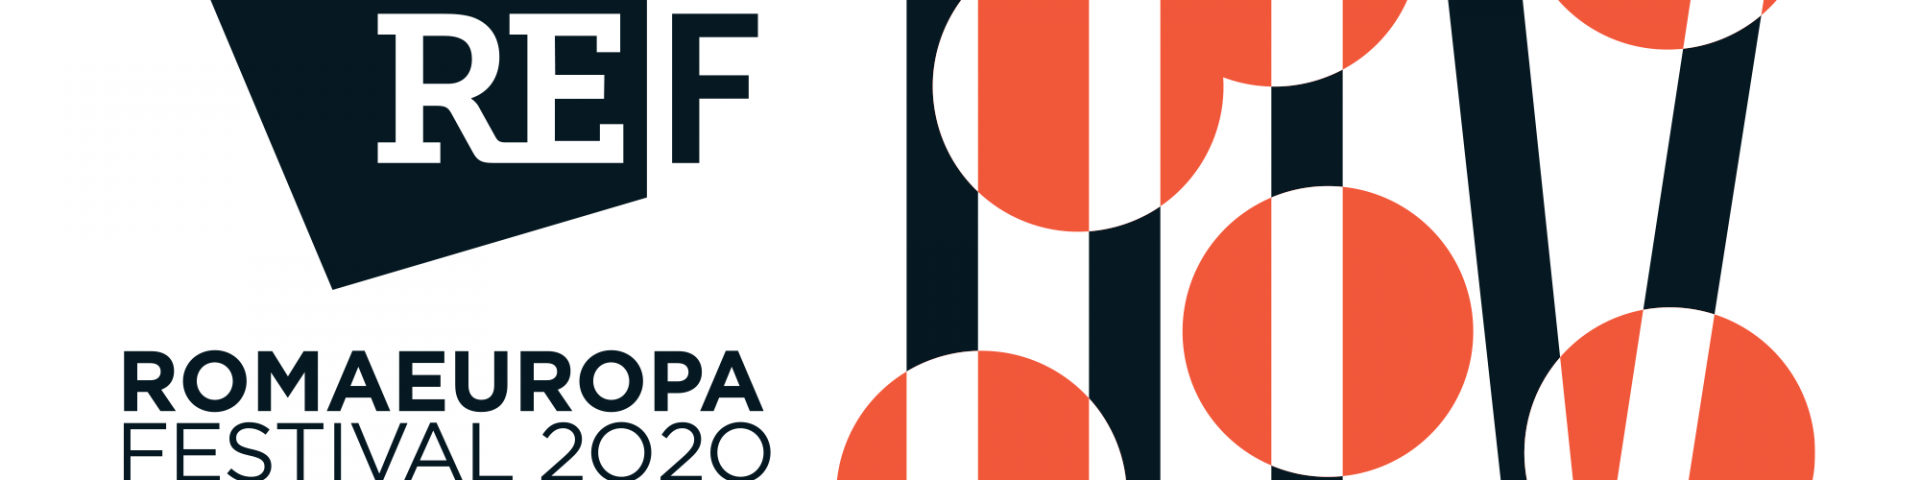 Romaeuropa Festival 2020: tutte le novità della 35esima edizione